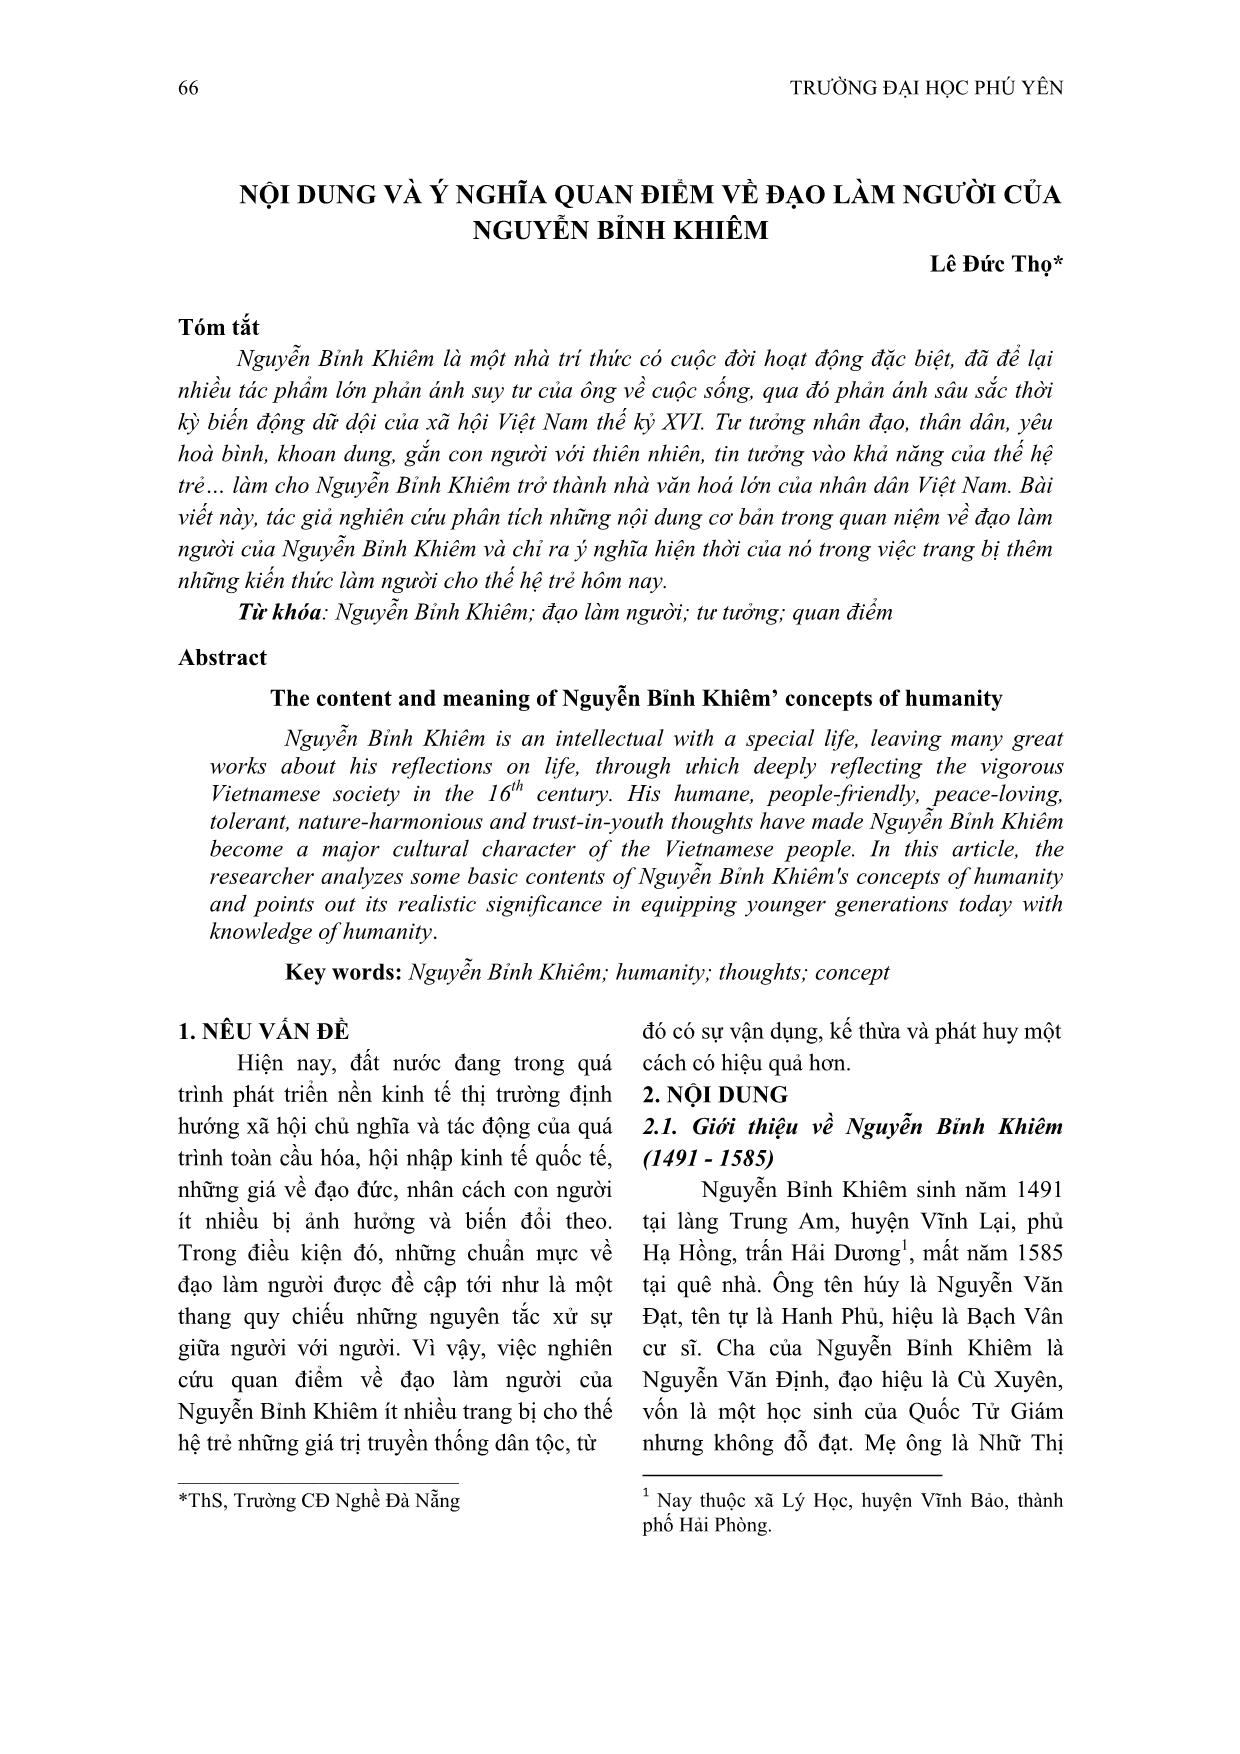 Nội dung và ý nghĩa quan điểm về đạo làm người của Nguyễn Bỉnh Khiêm trang 1